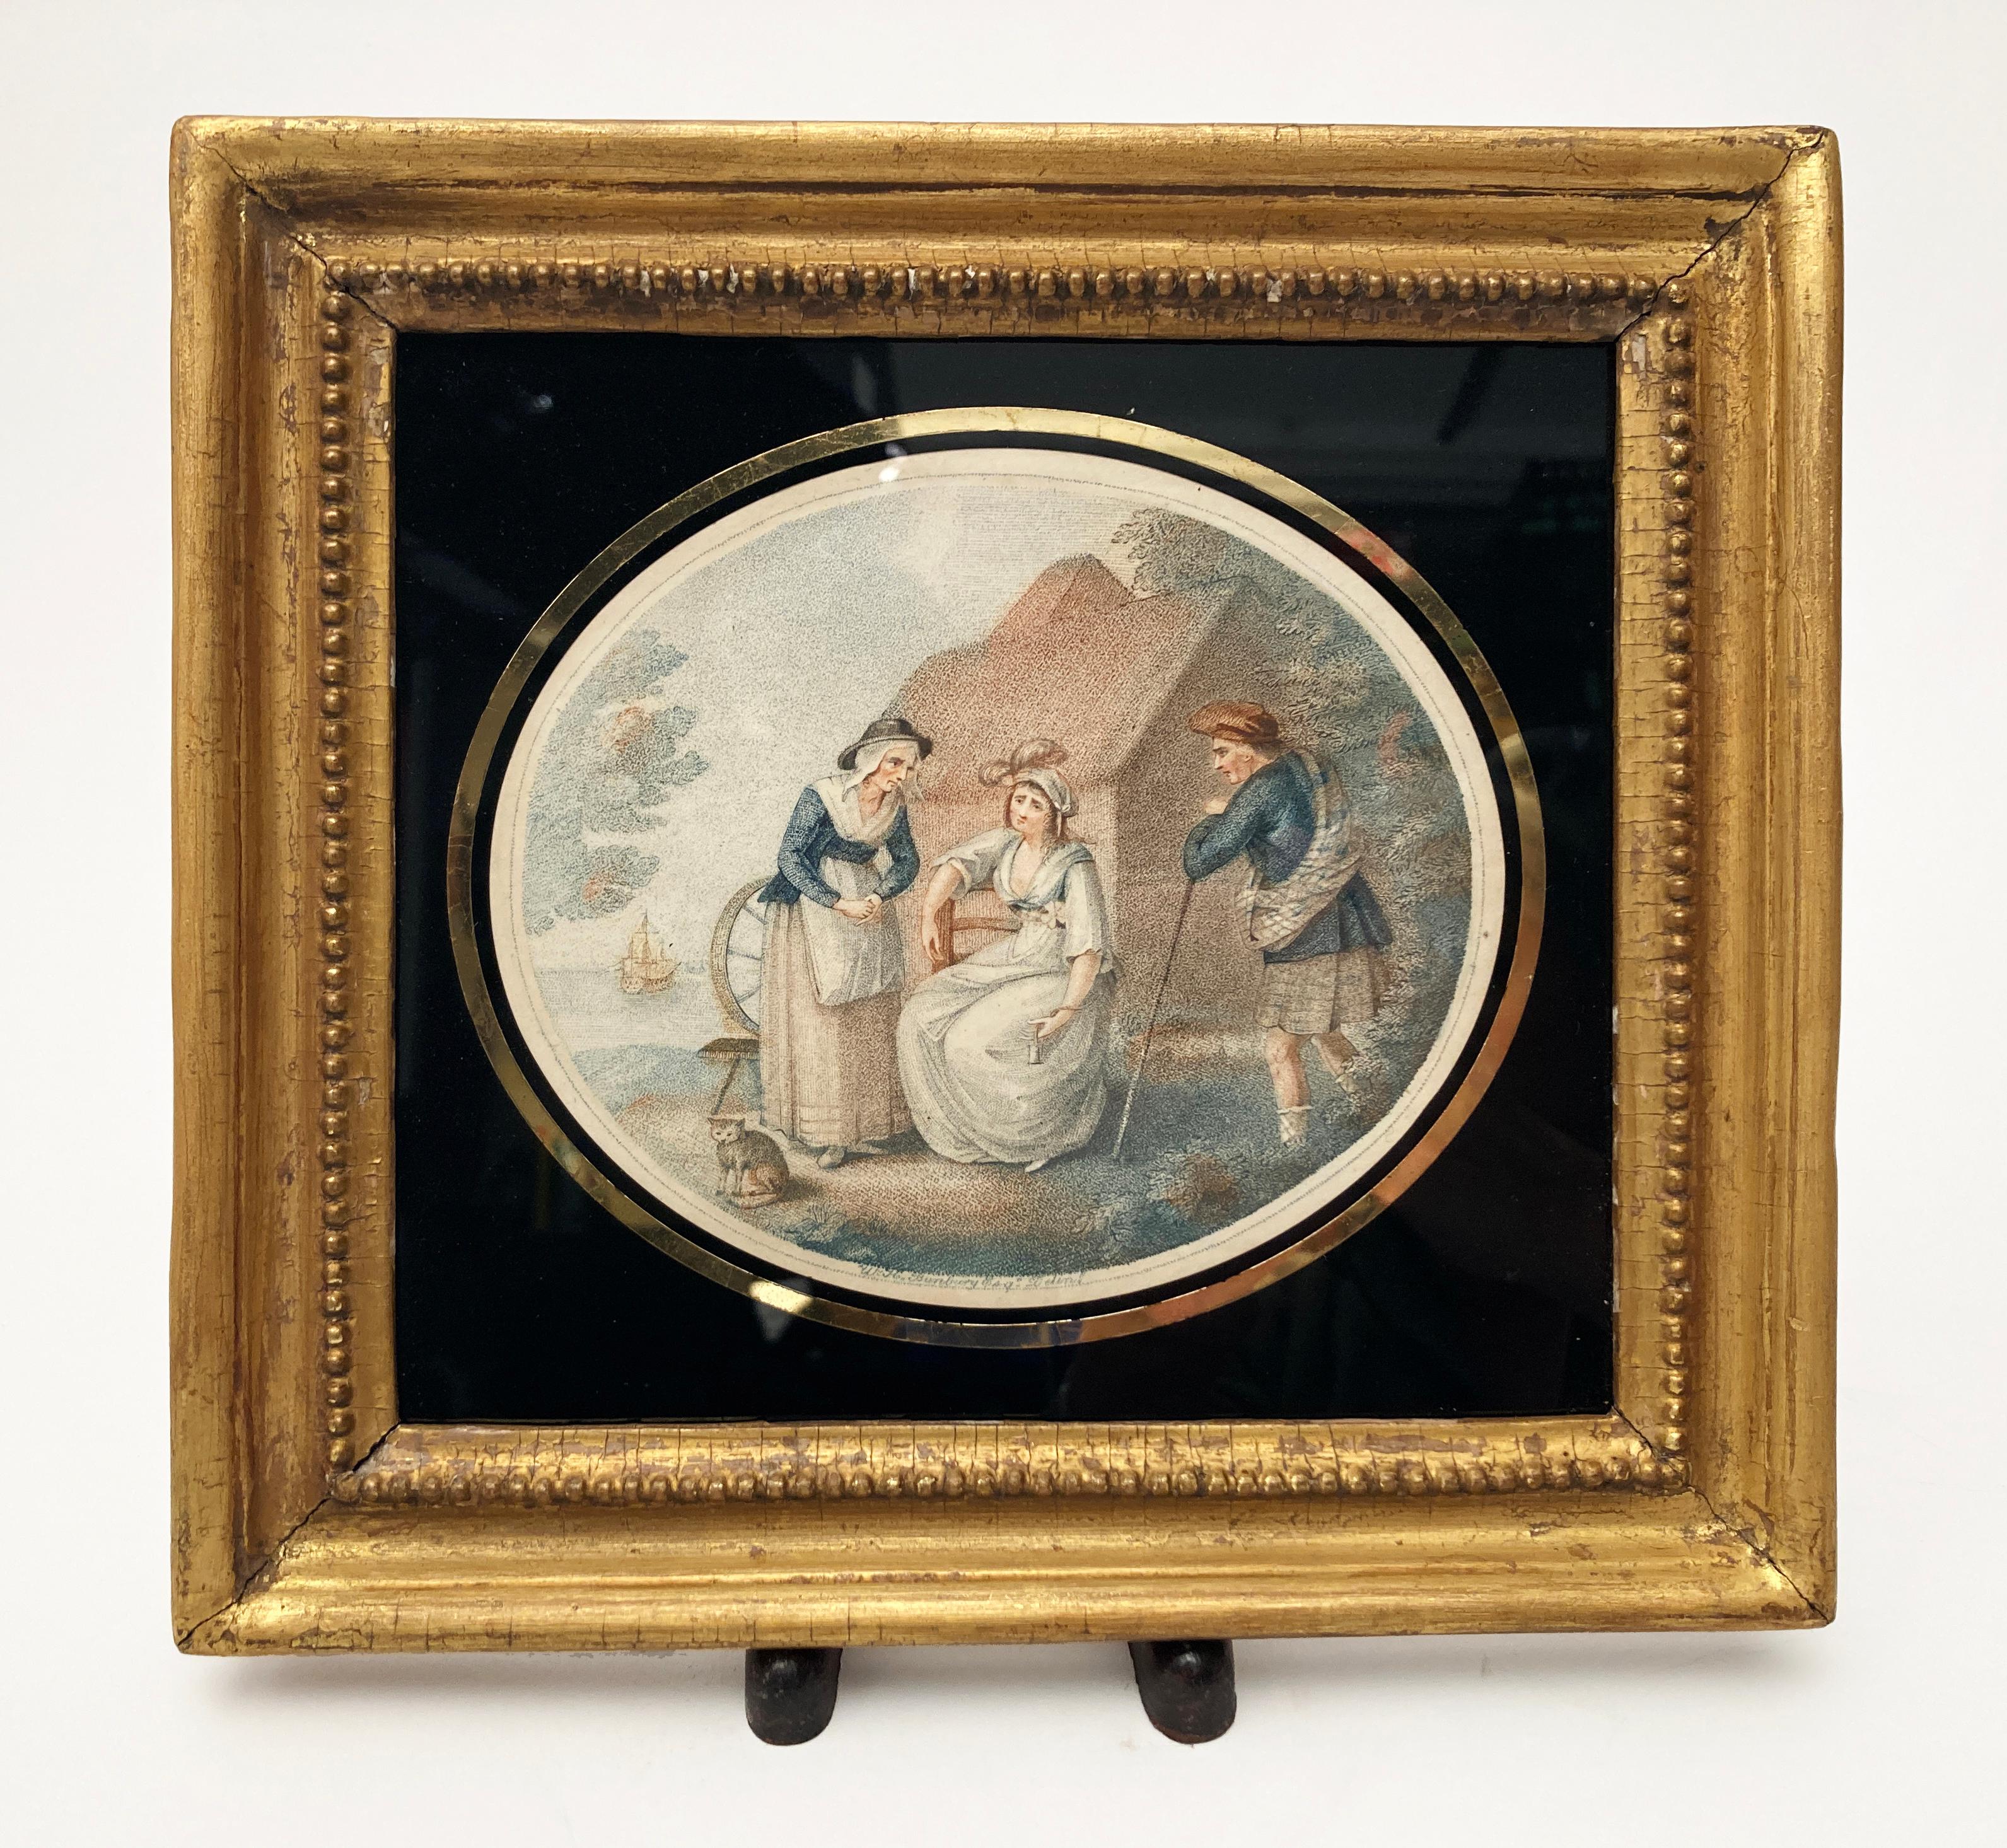 Il s'agit de gravures en couleur exceptionnellement RARE, réalisées d'après des originaux de l'artiste Henry William Bunbury (1750-1811) et gravées par Francesco Bartolozzi. Les deux impressions ont été réalisées à l'aide de la technique du